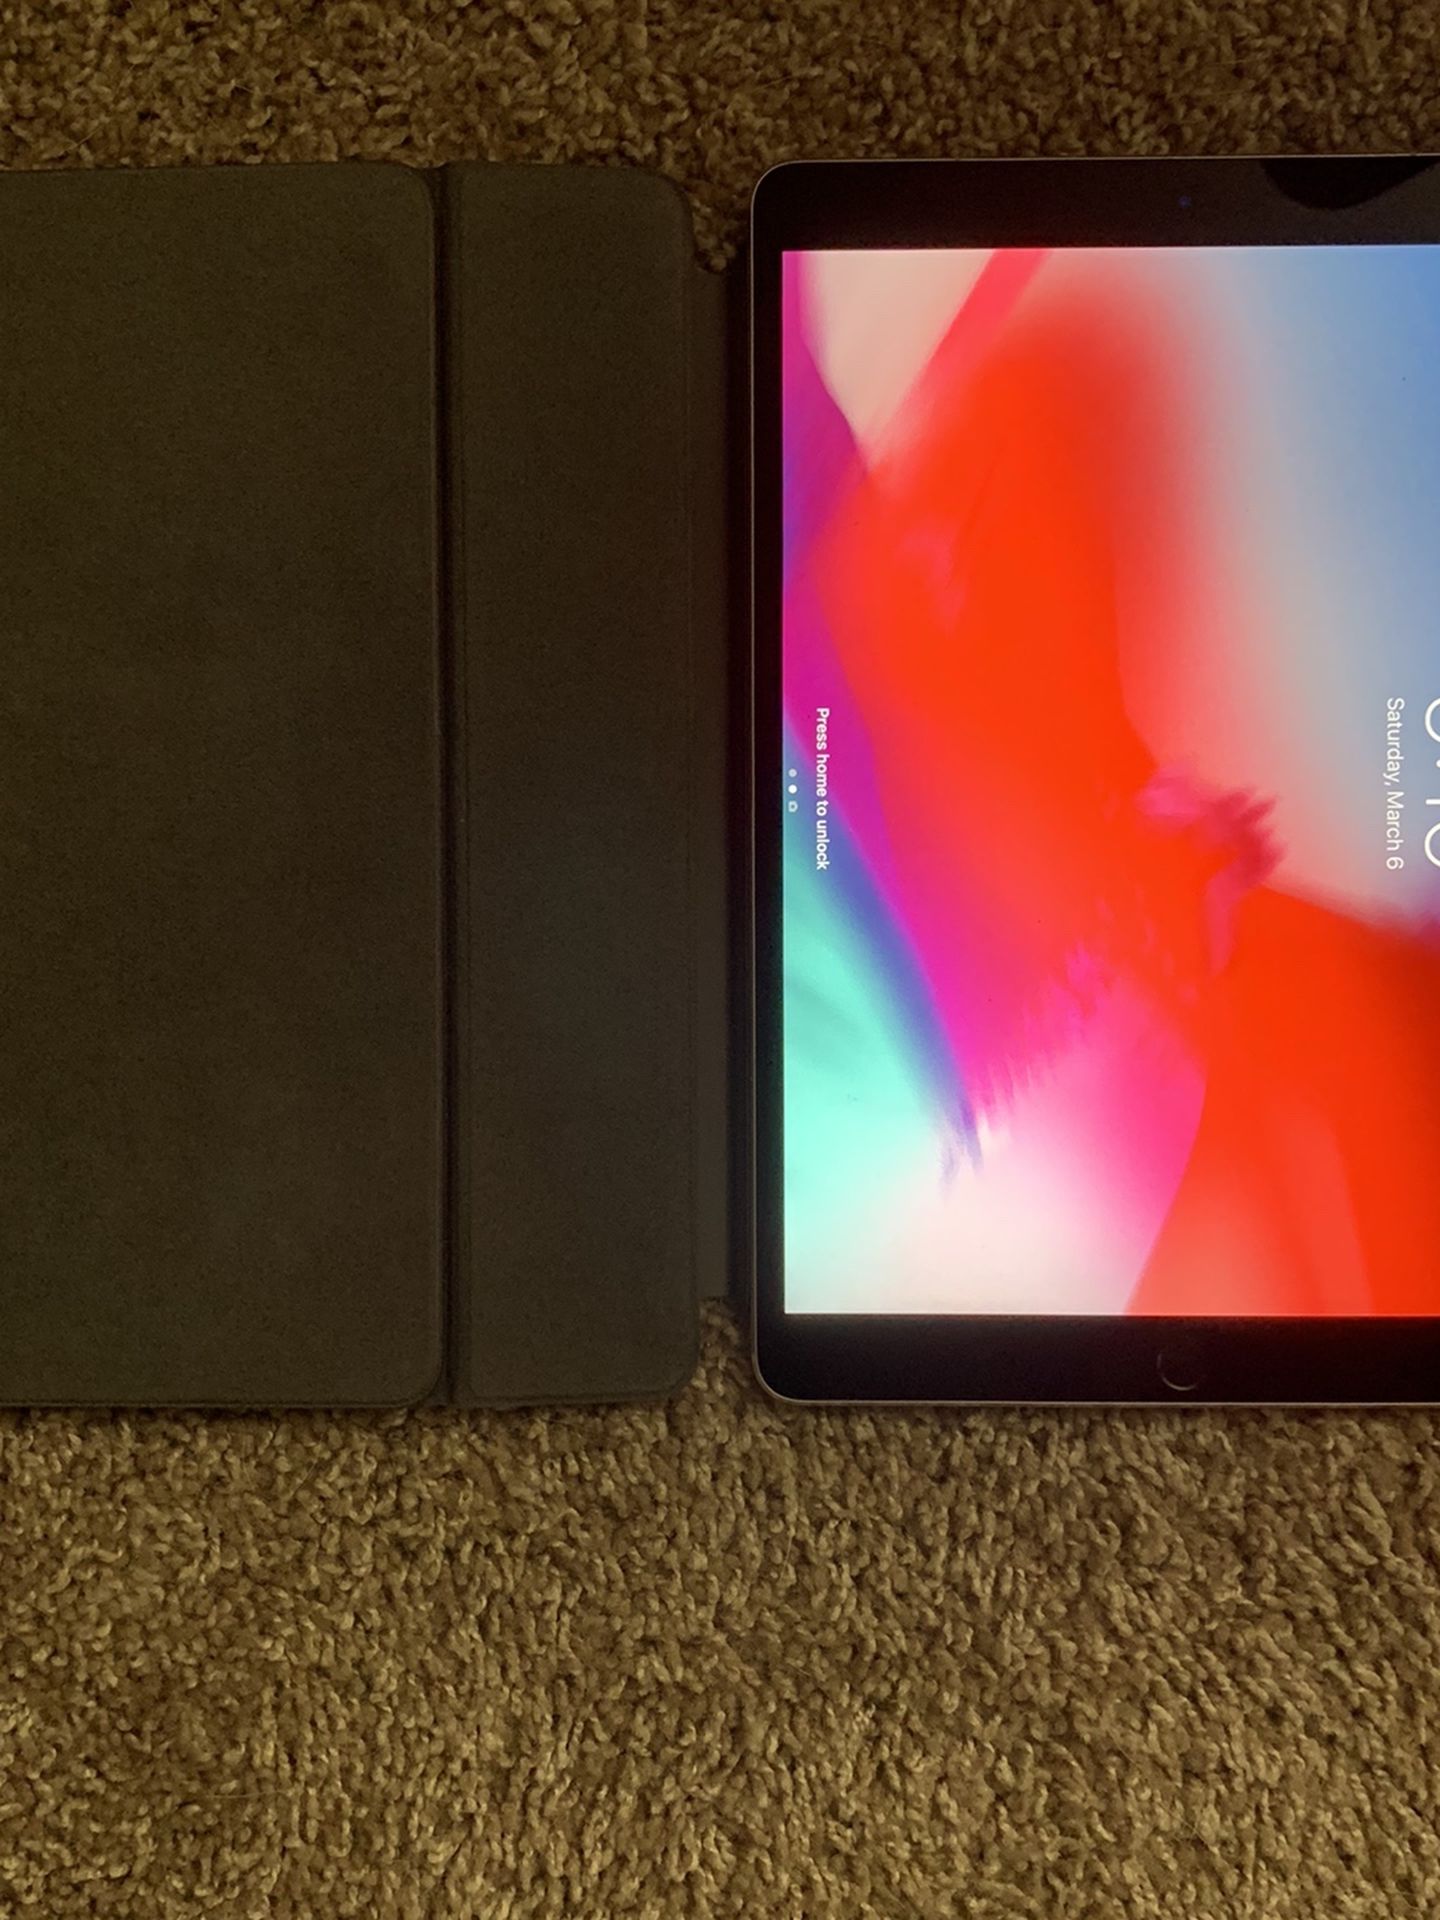 2017 iPad Pro 10.5 with iPen